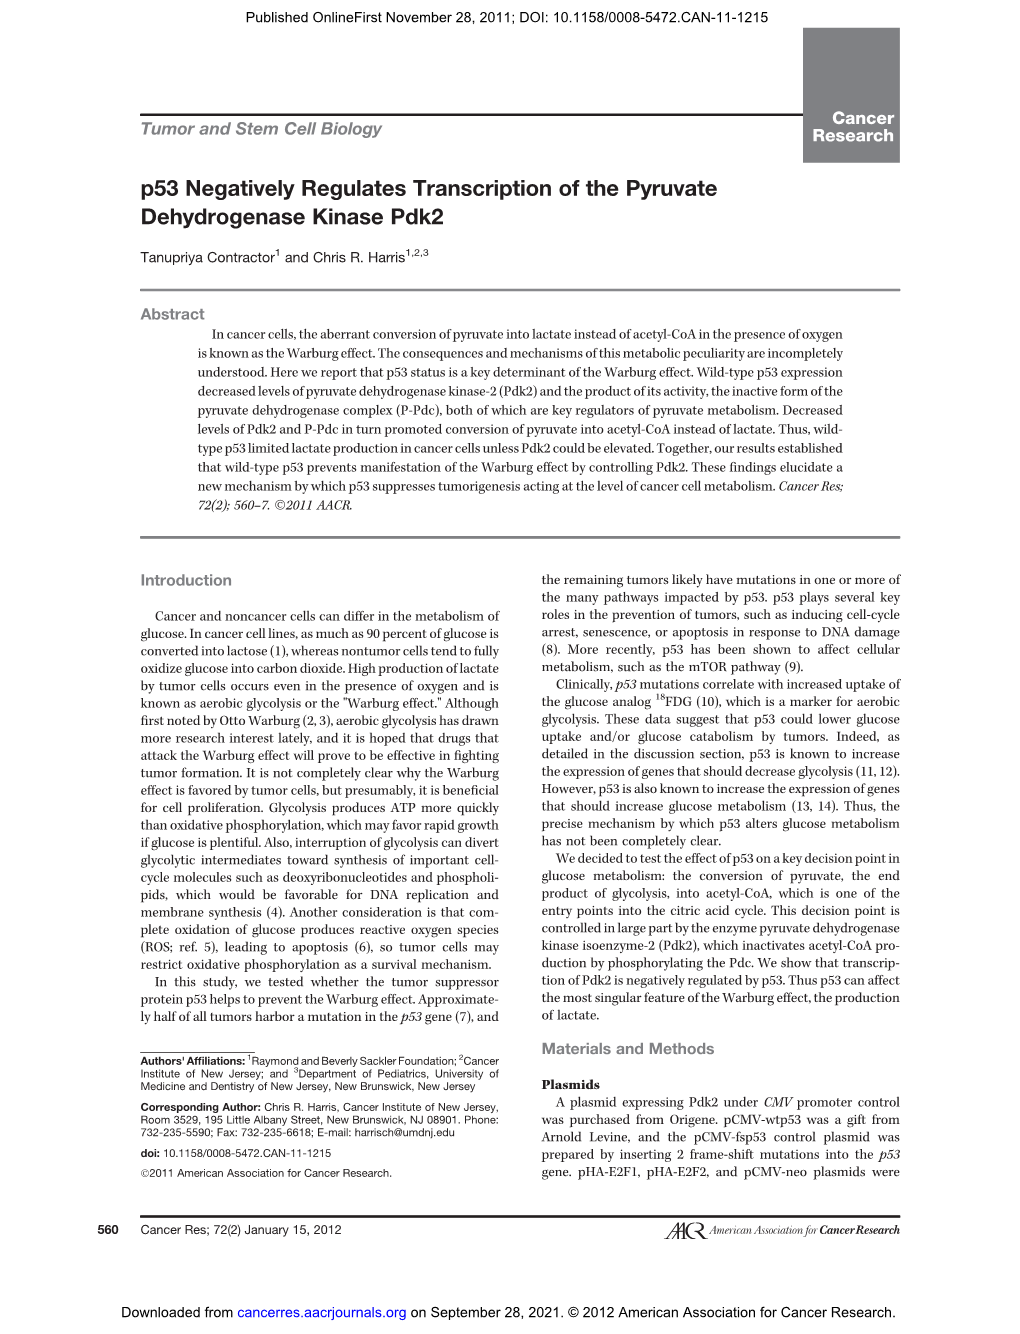 P53 Negatively Regulates Transcription of the Pyruvate Dehydrogenase Kinase Pdk2